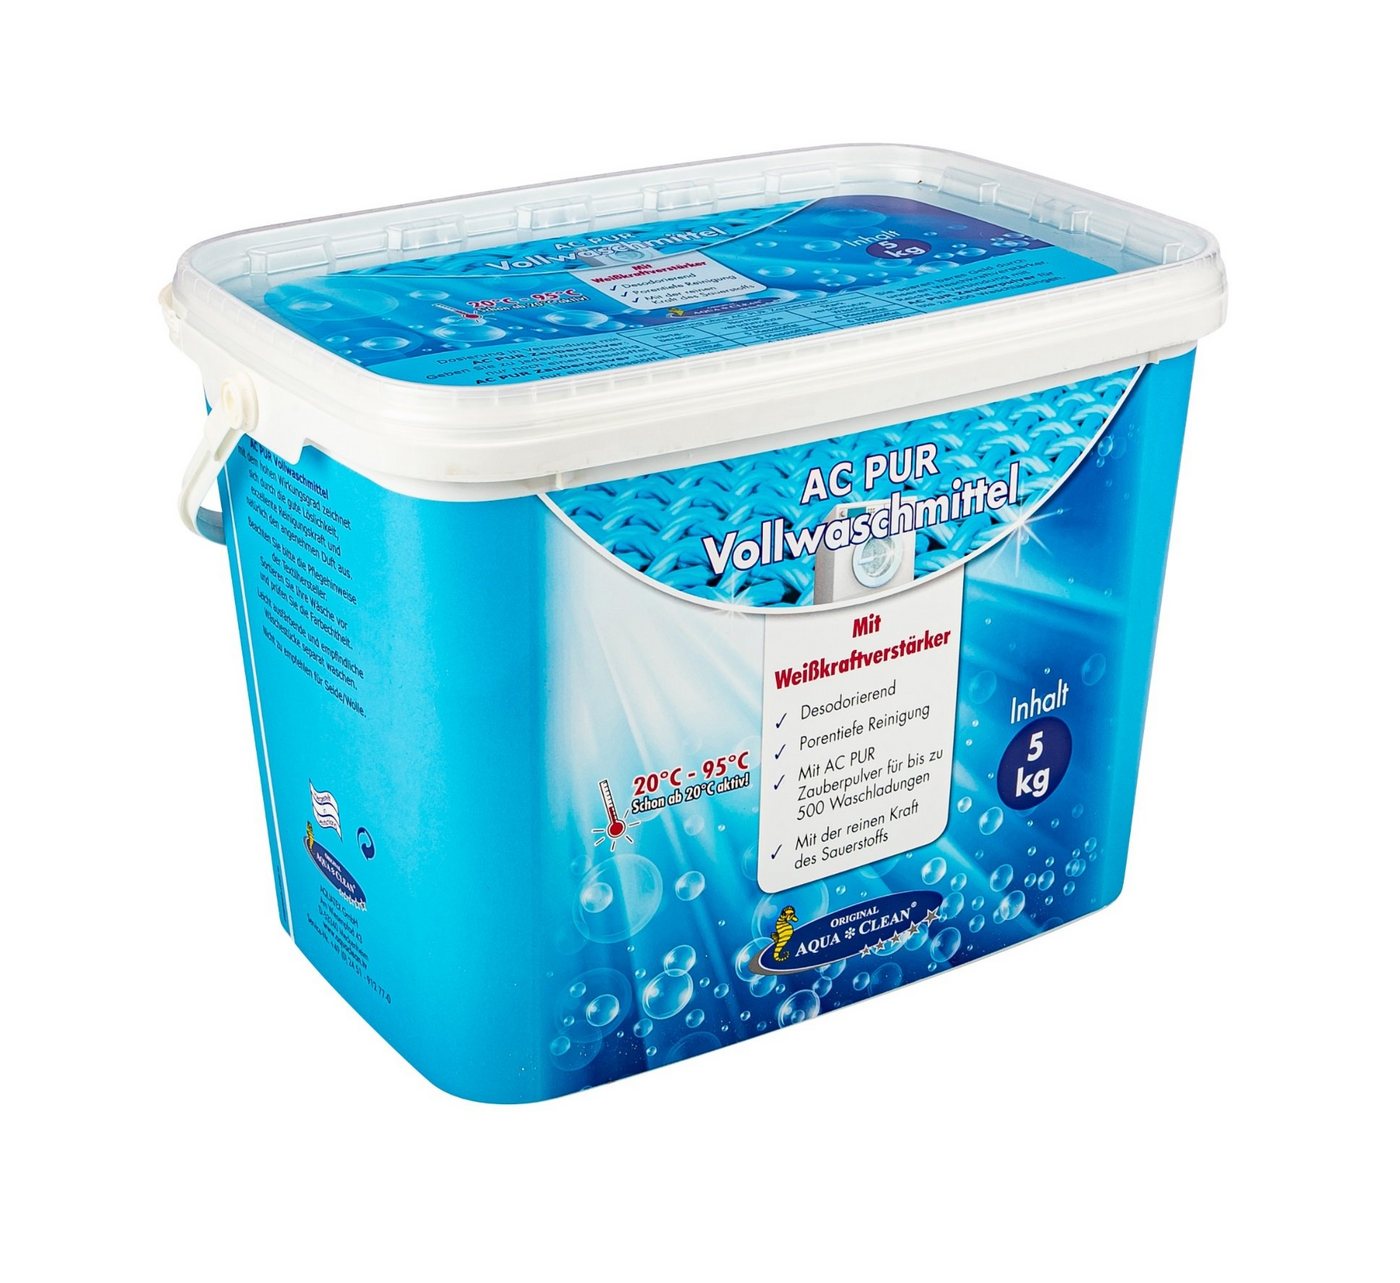 AQUA CLEAN AC PUR Vollwaschmittel Vollwaschmittel (mit Farb-& Faserschutz und Weisskraftverstärker 5kg) von AQUA CLEAN